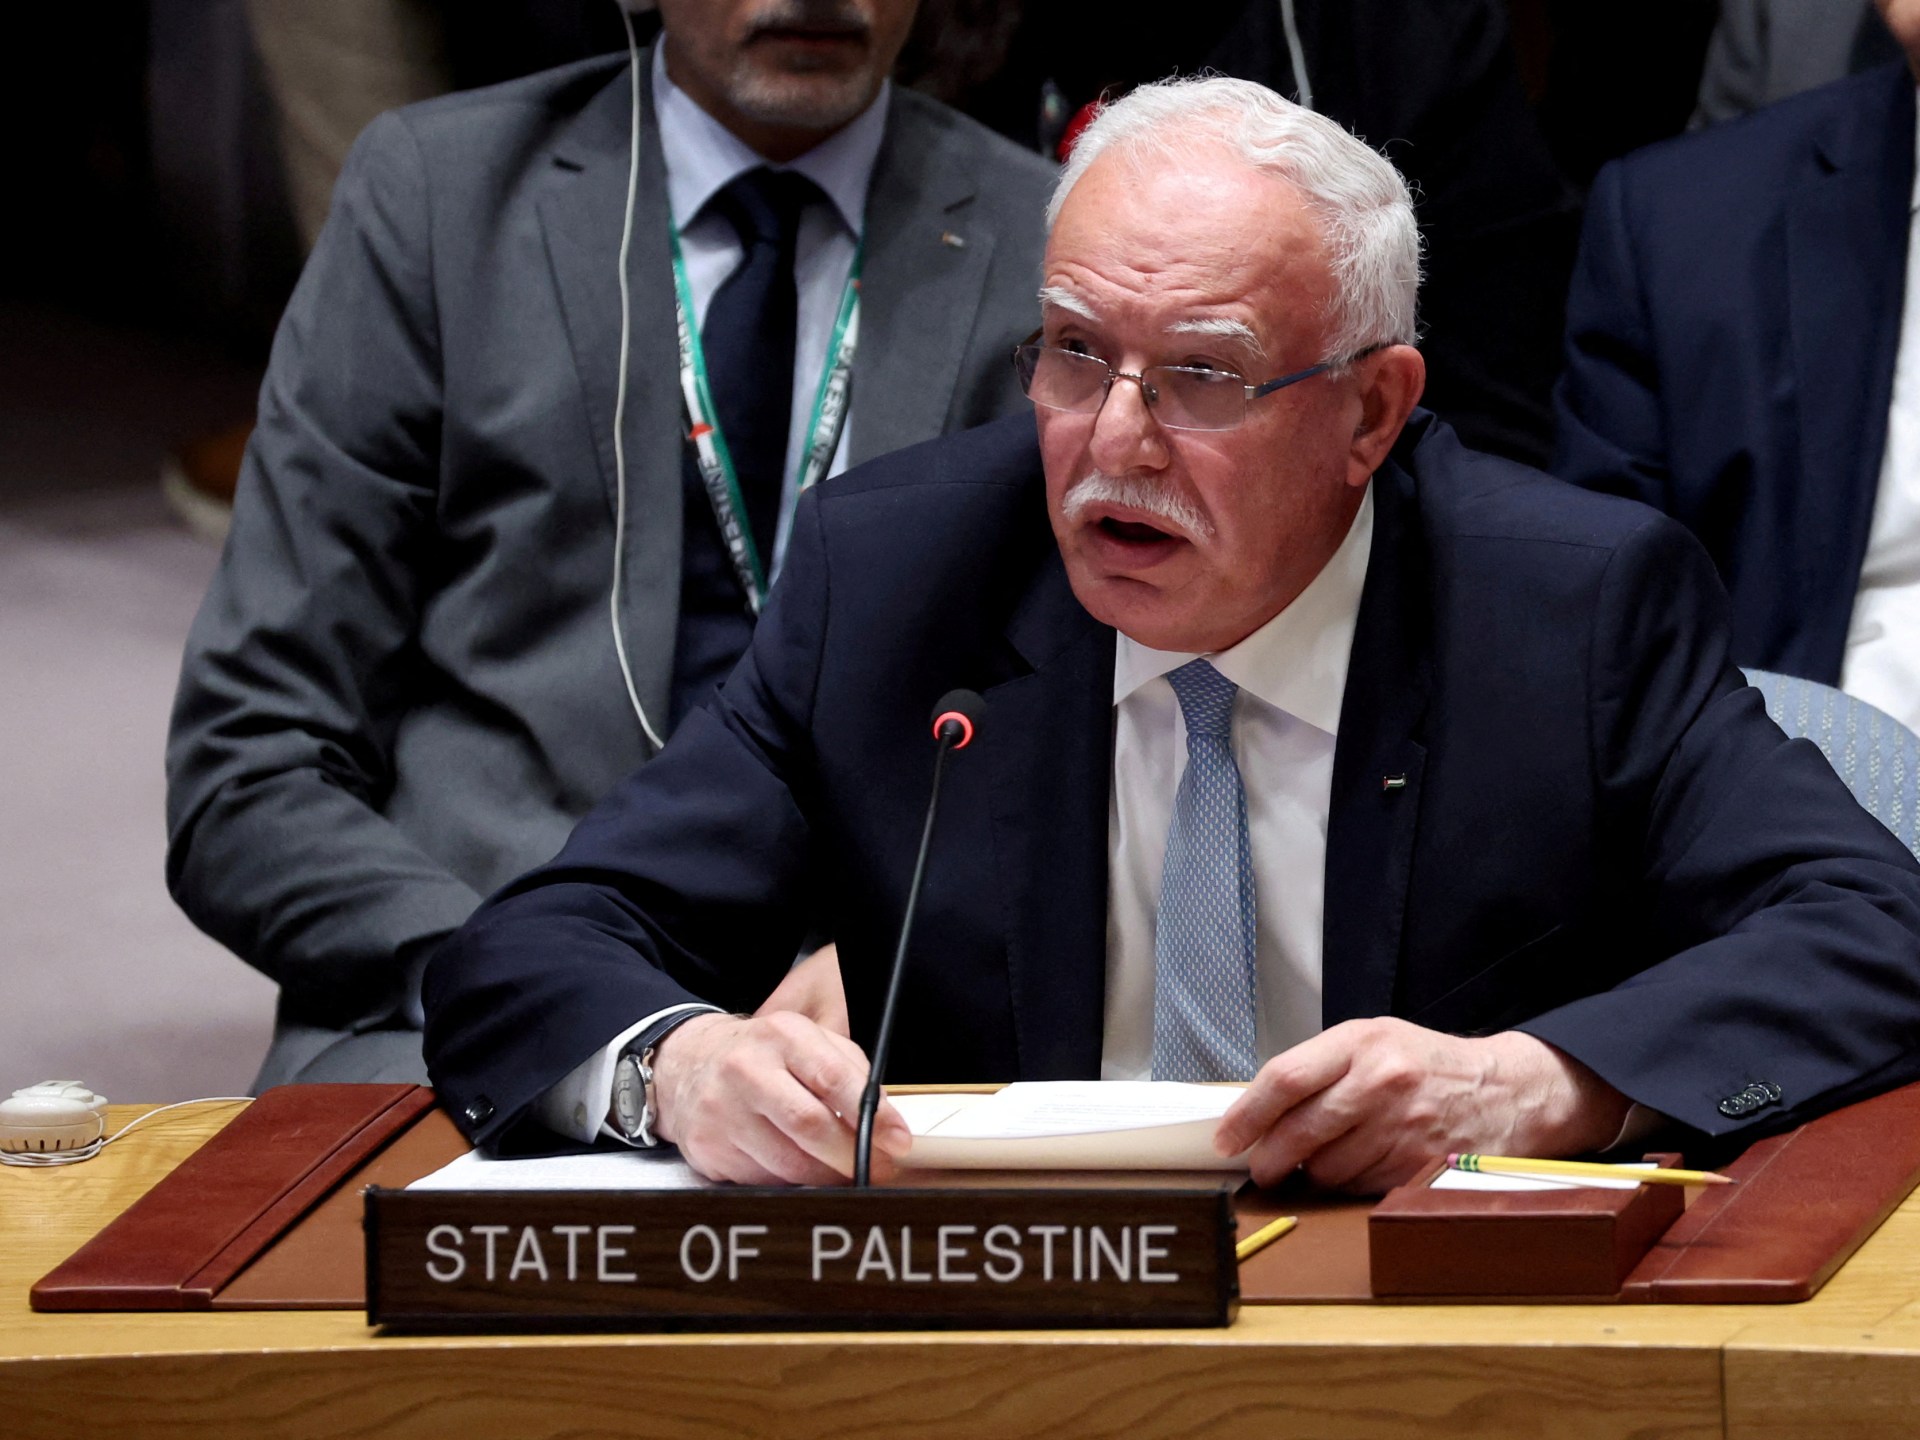 Il vertice Cina-Medio Oriente afferma che “Israele cerca di porre fine alla presenza palestinese” |  Notizie sul conflitto israelo-palestinese